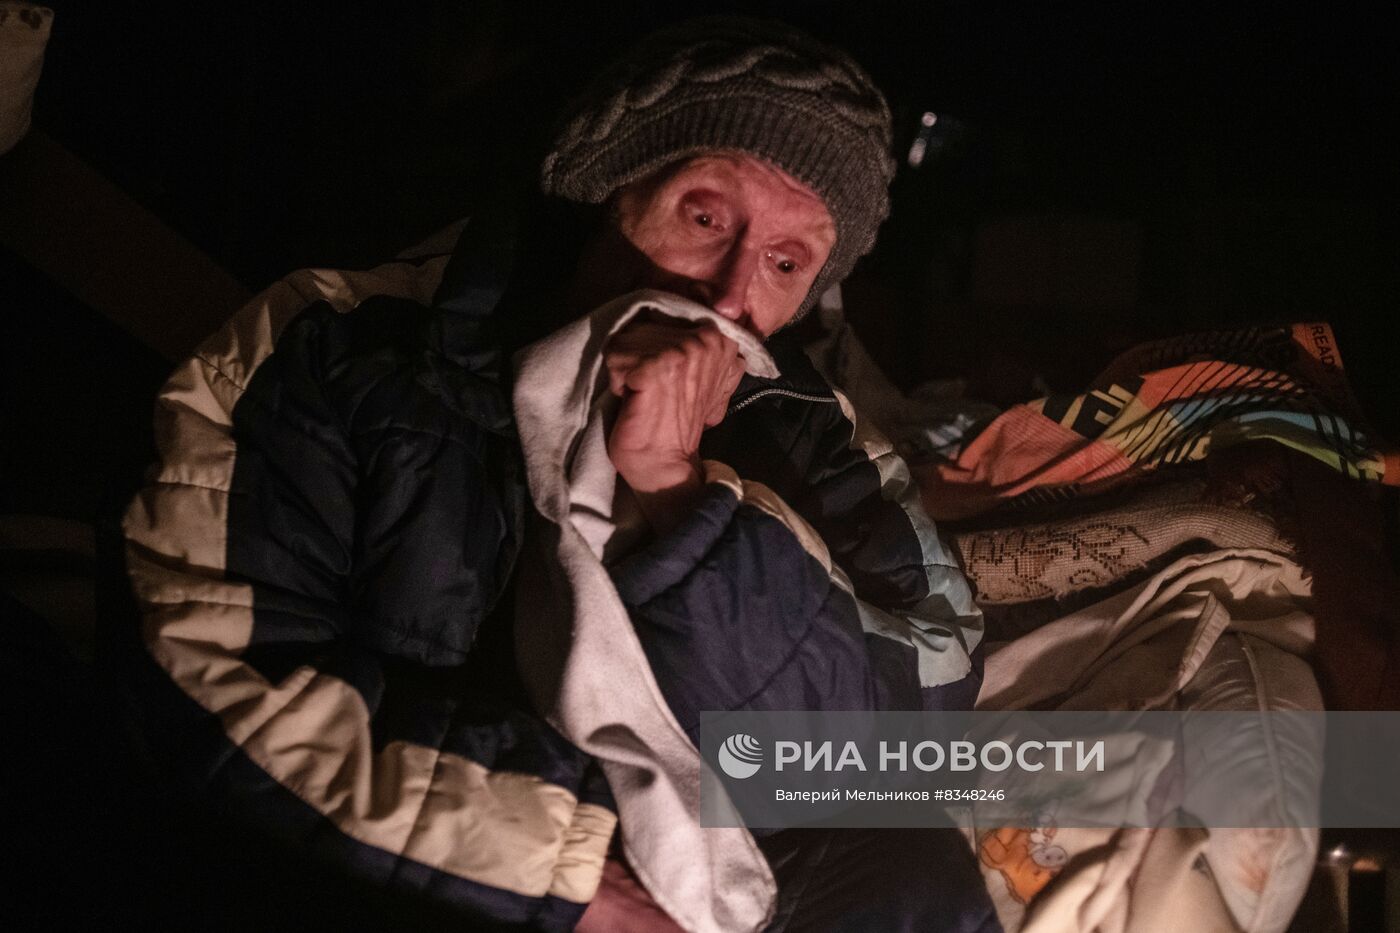 Последствия обстрела Петровского района Донецка 